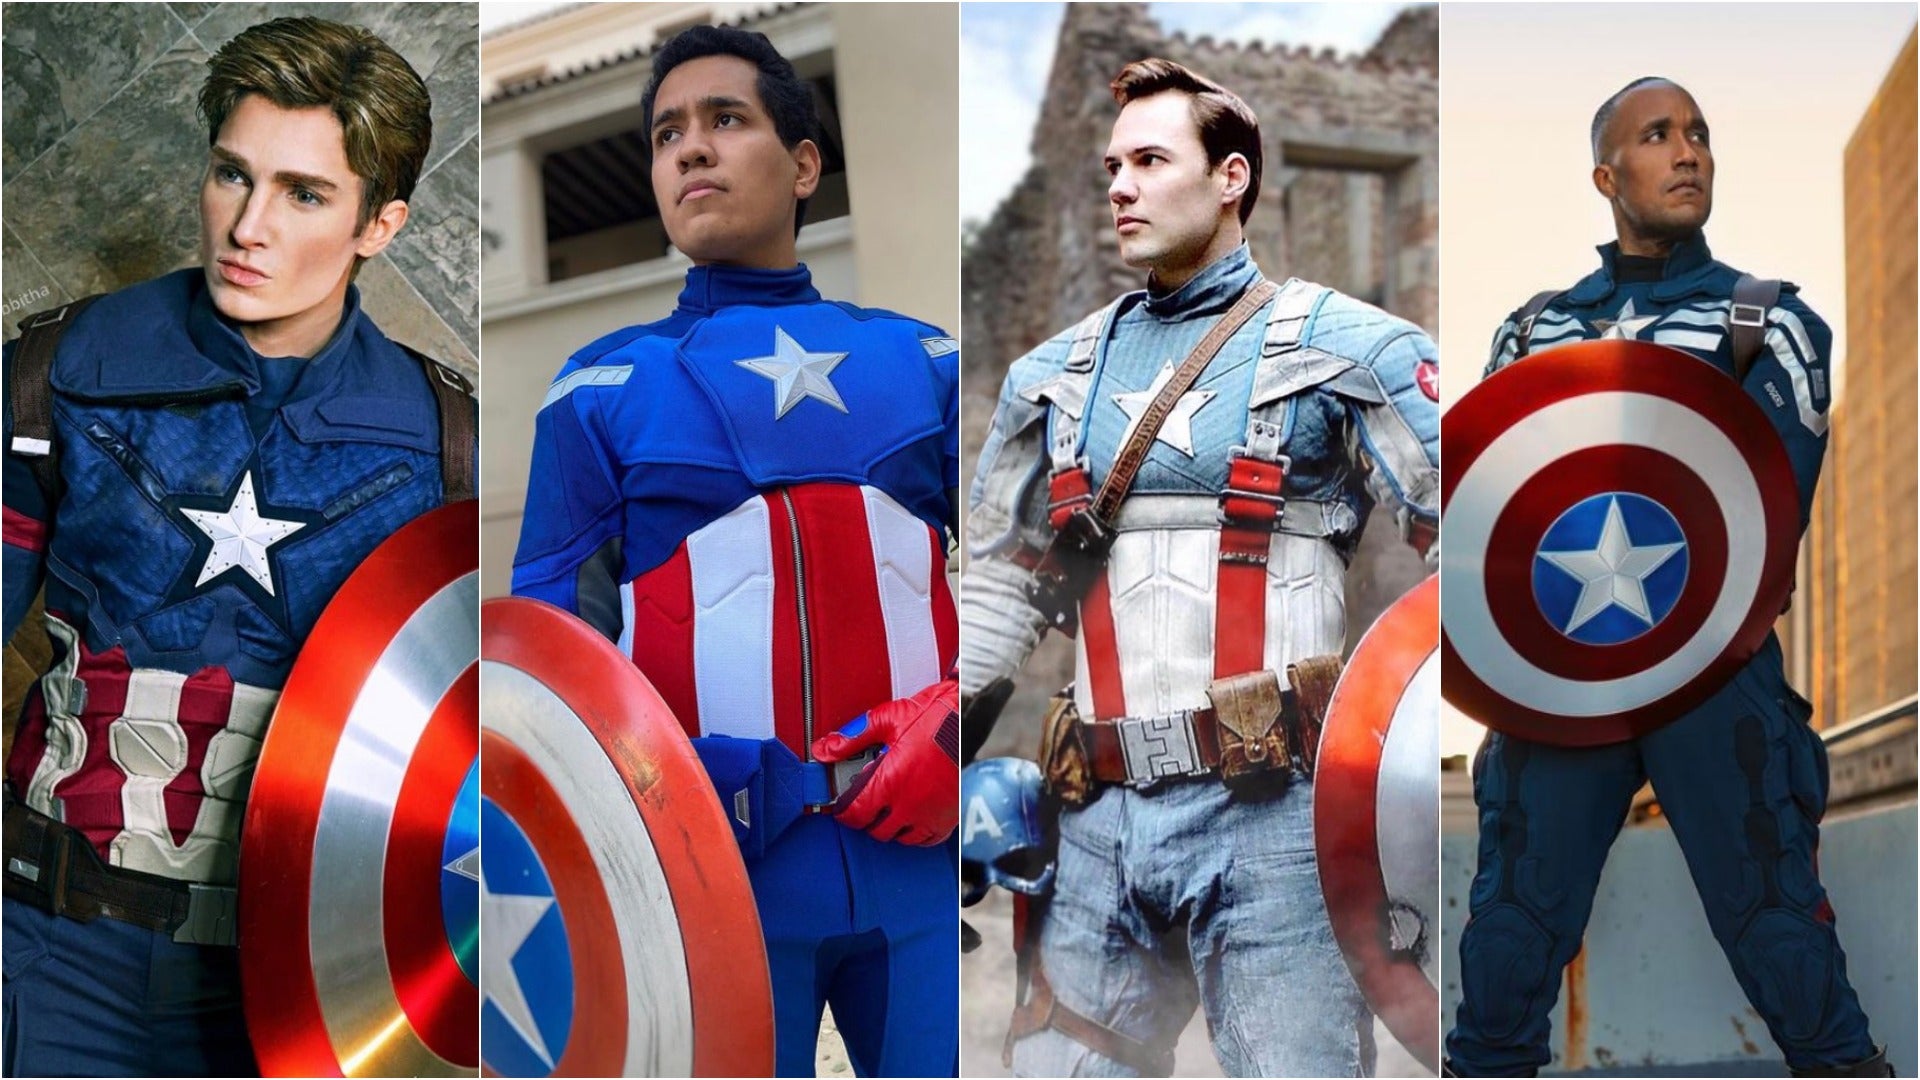 Avengers Endgame Captain America Costume Cosplay Bodysuit Handmade | eBay